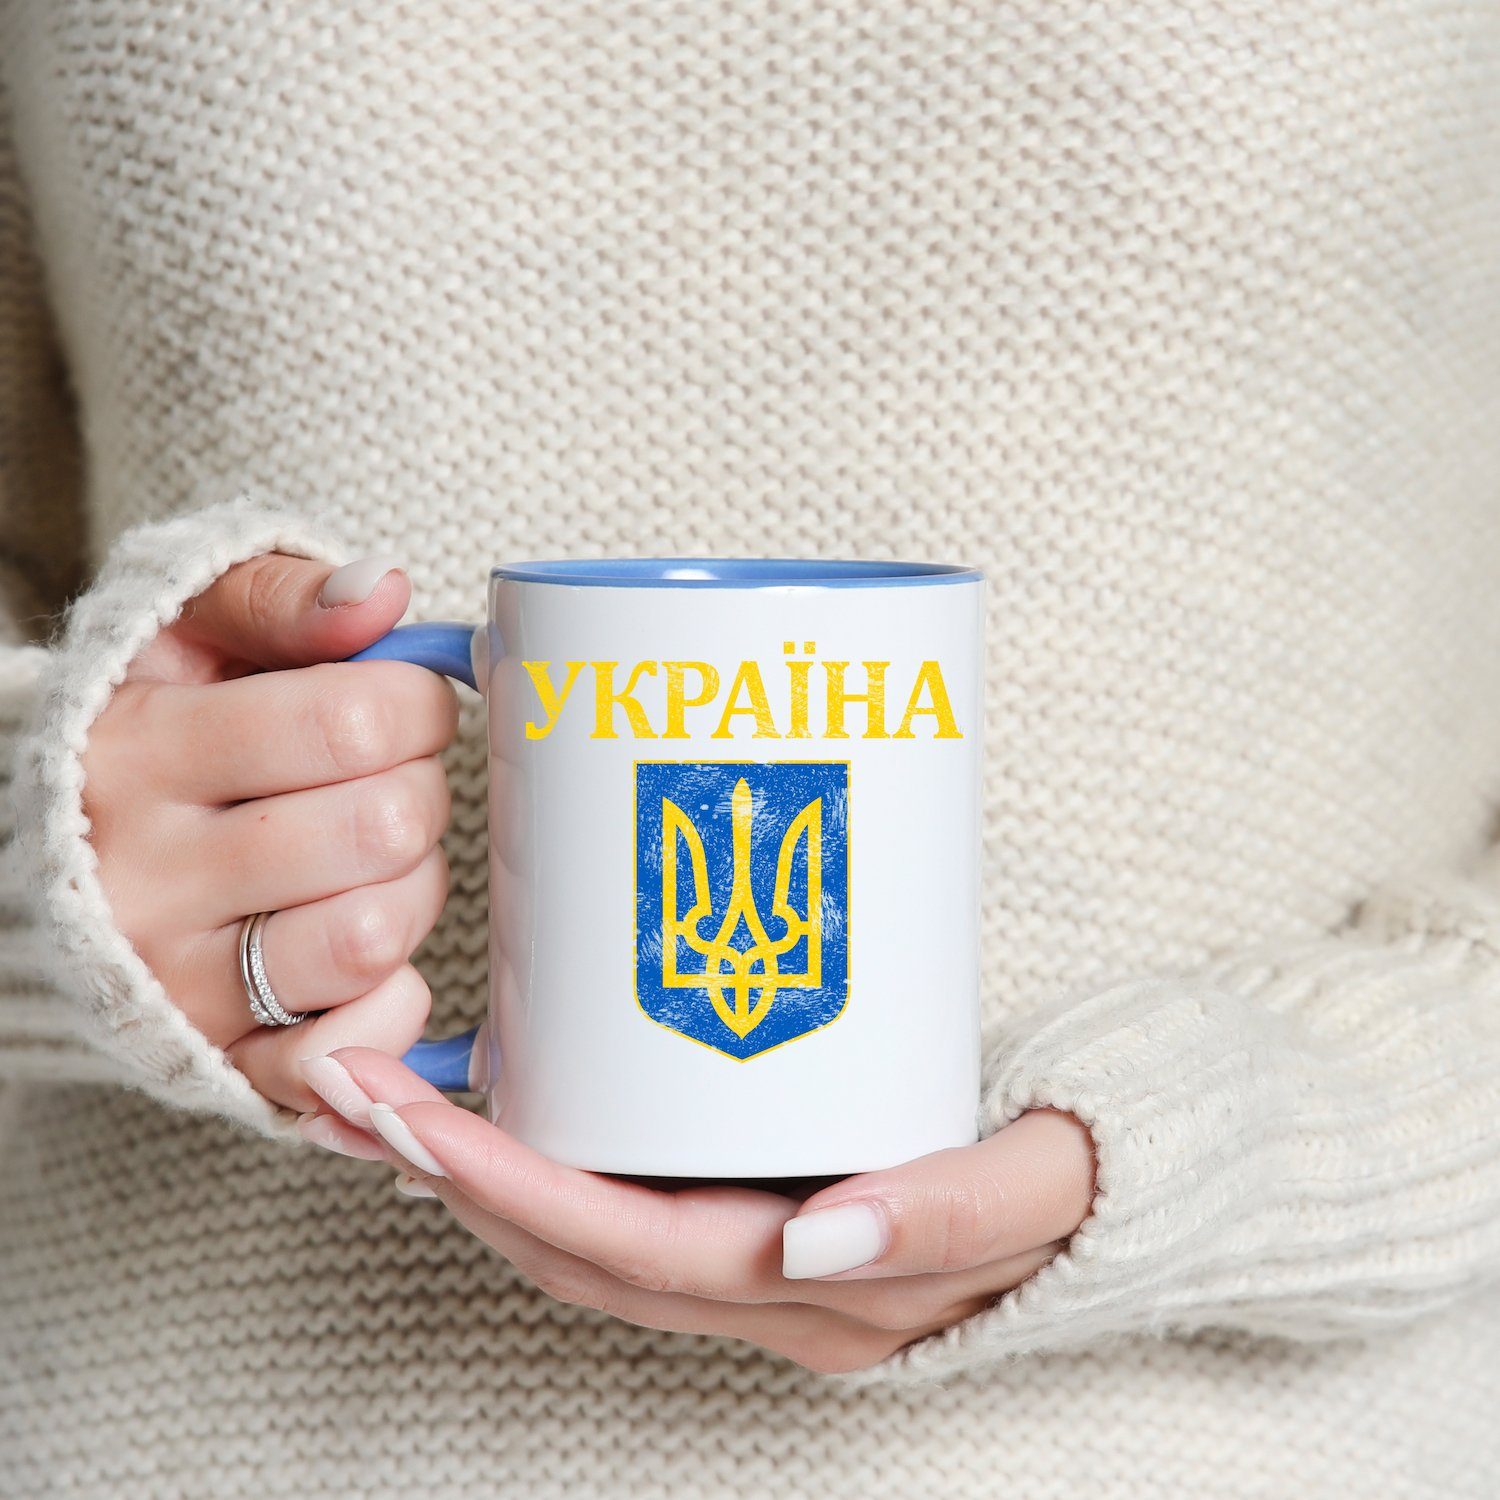 Youth Designz Tasse Vintage Geschenk, Weiss/Royal mit Ukraine Keramik, Print Vintage Kaffeetasse Wappen Wappen